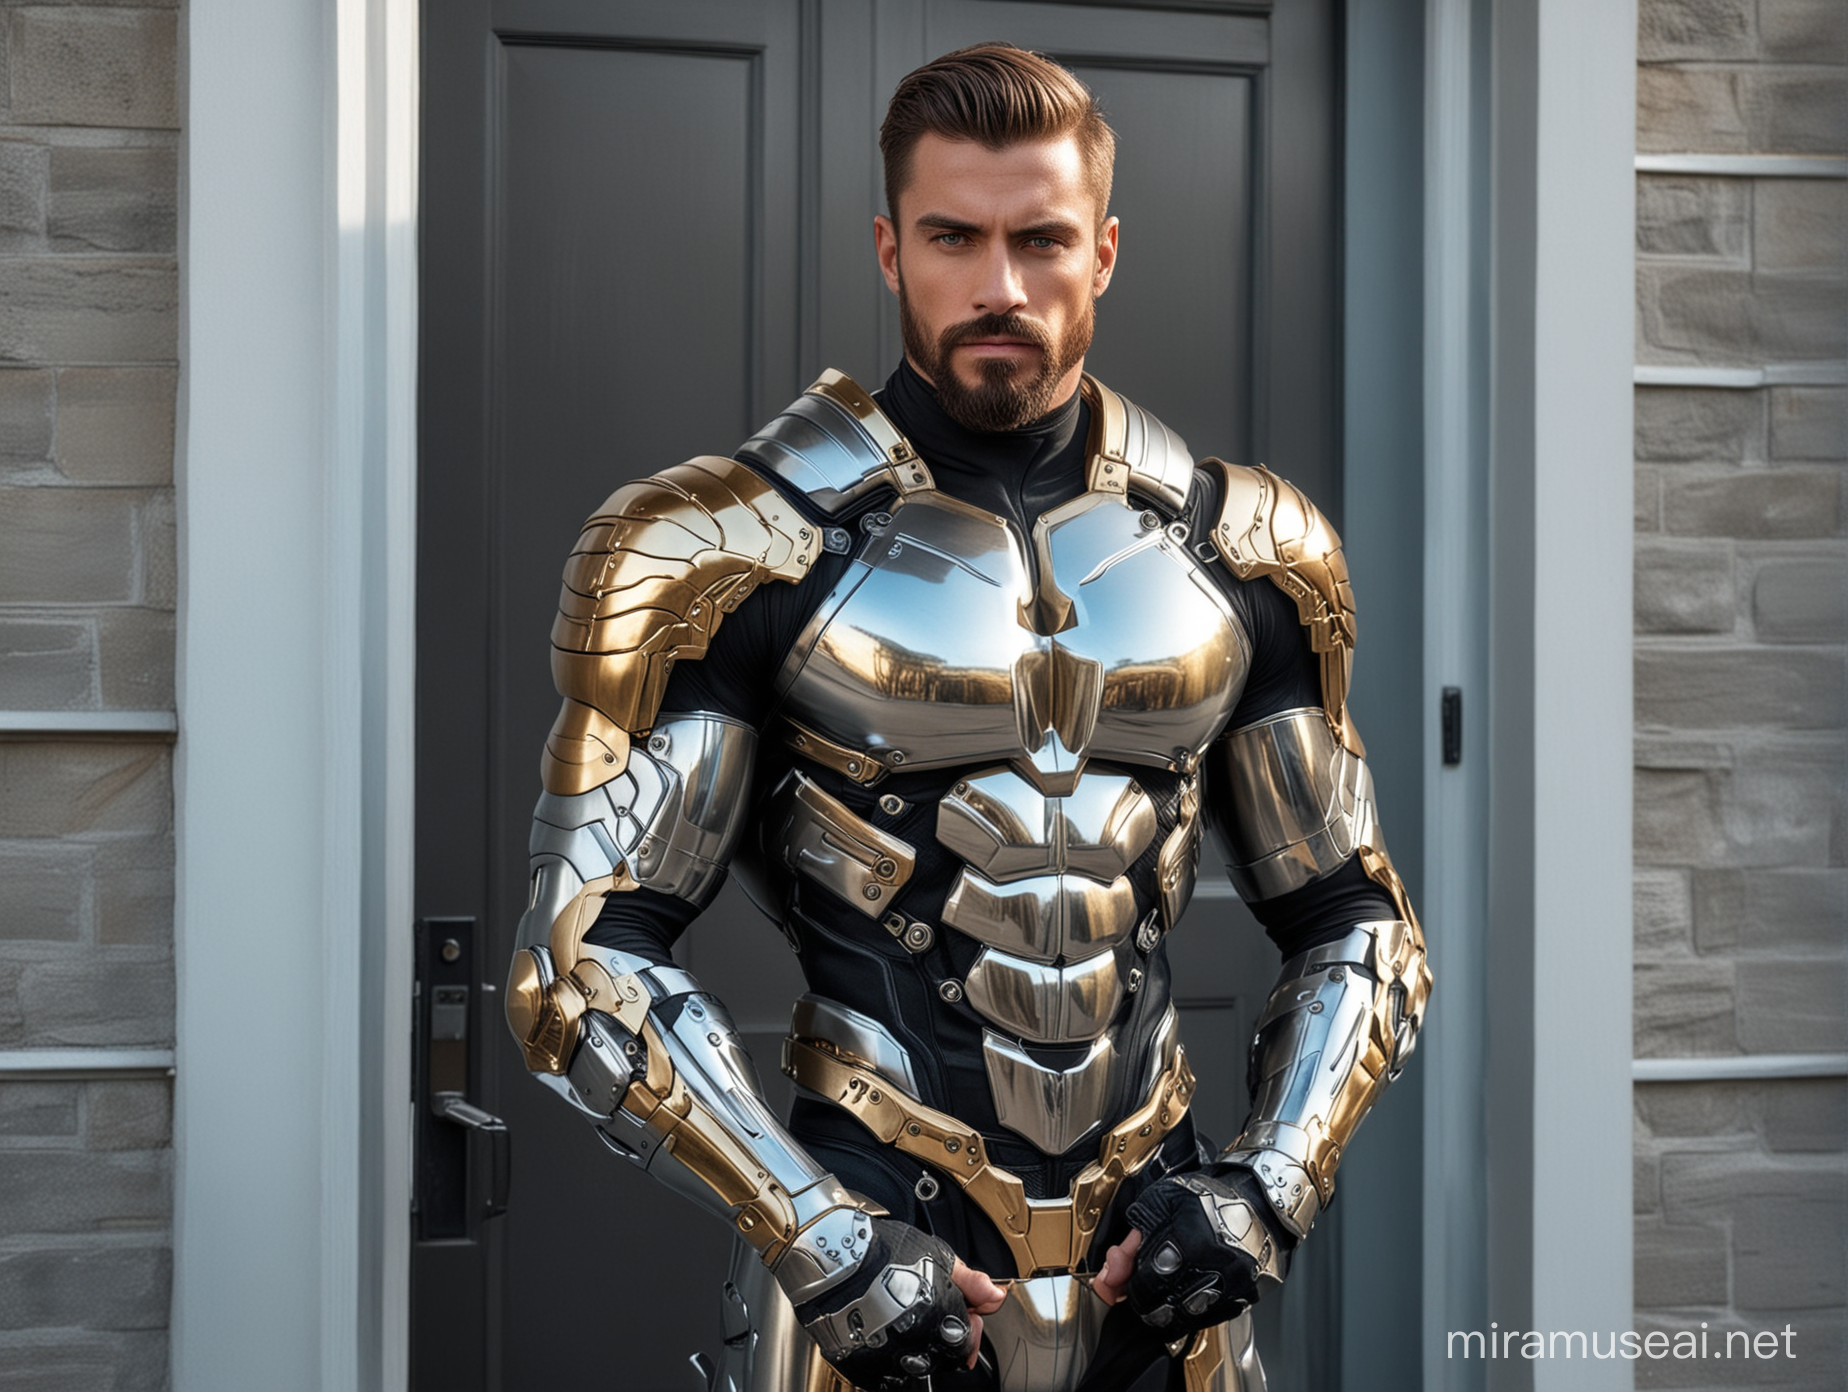 SciFi Bodybuilder Men in HighTech Armor Suit at Home Door